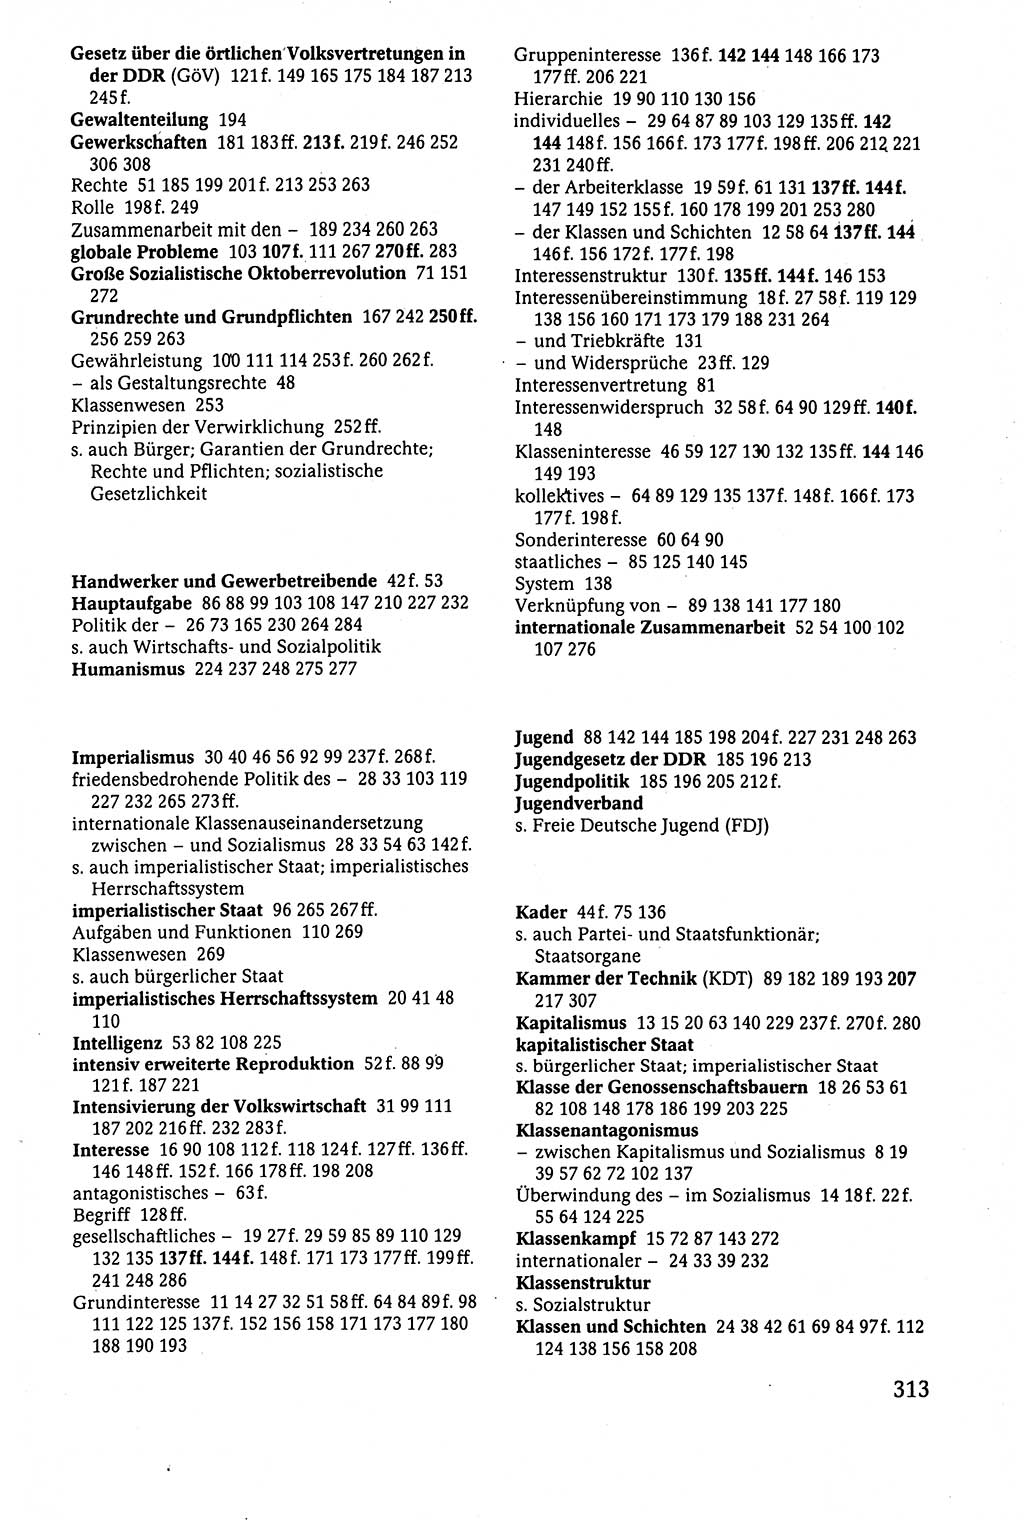 Der Staat im politischen System der DDR (Deutsche Demokratische Republik) 1986, Seite 313 (St. pol. Sys. DDR 1986, S. 313)